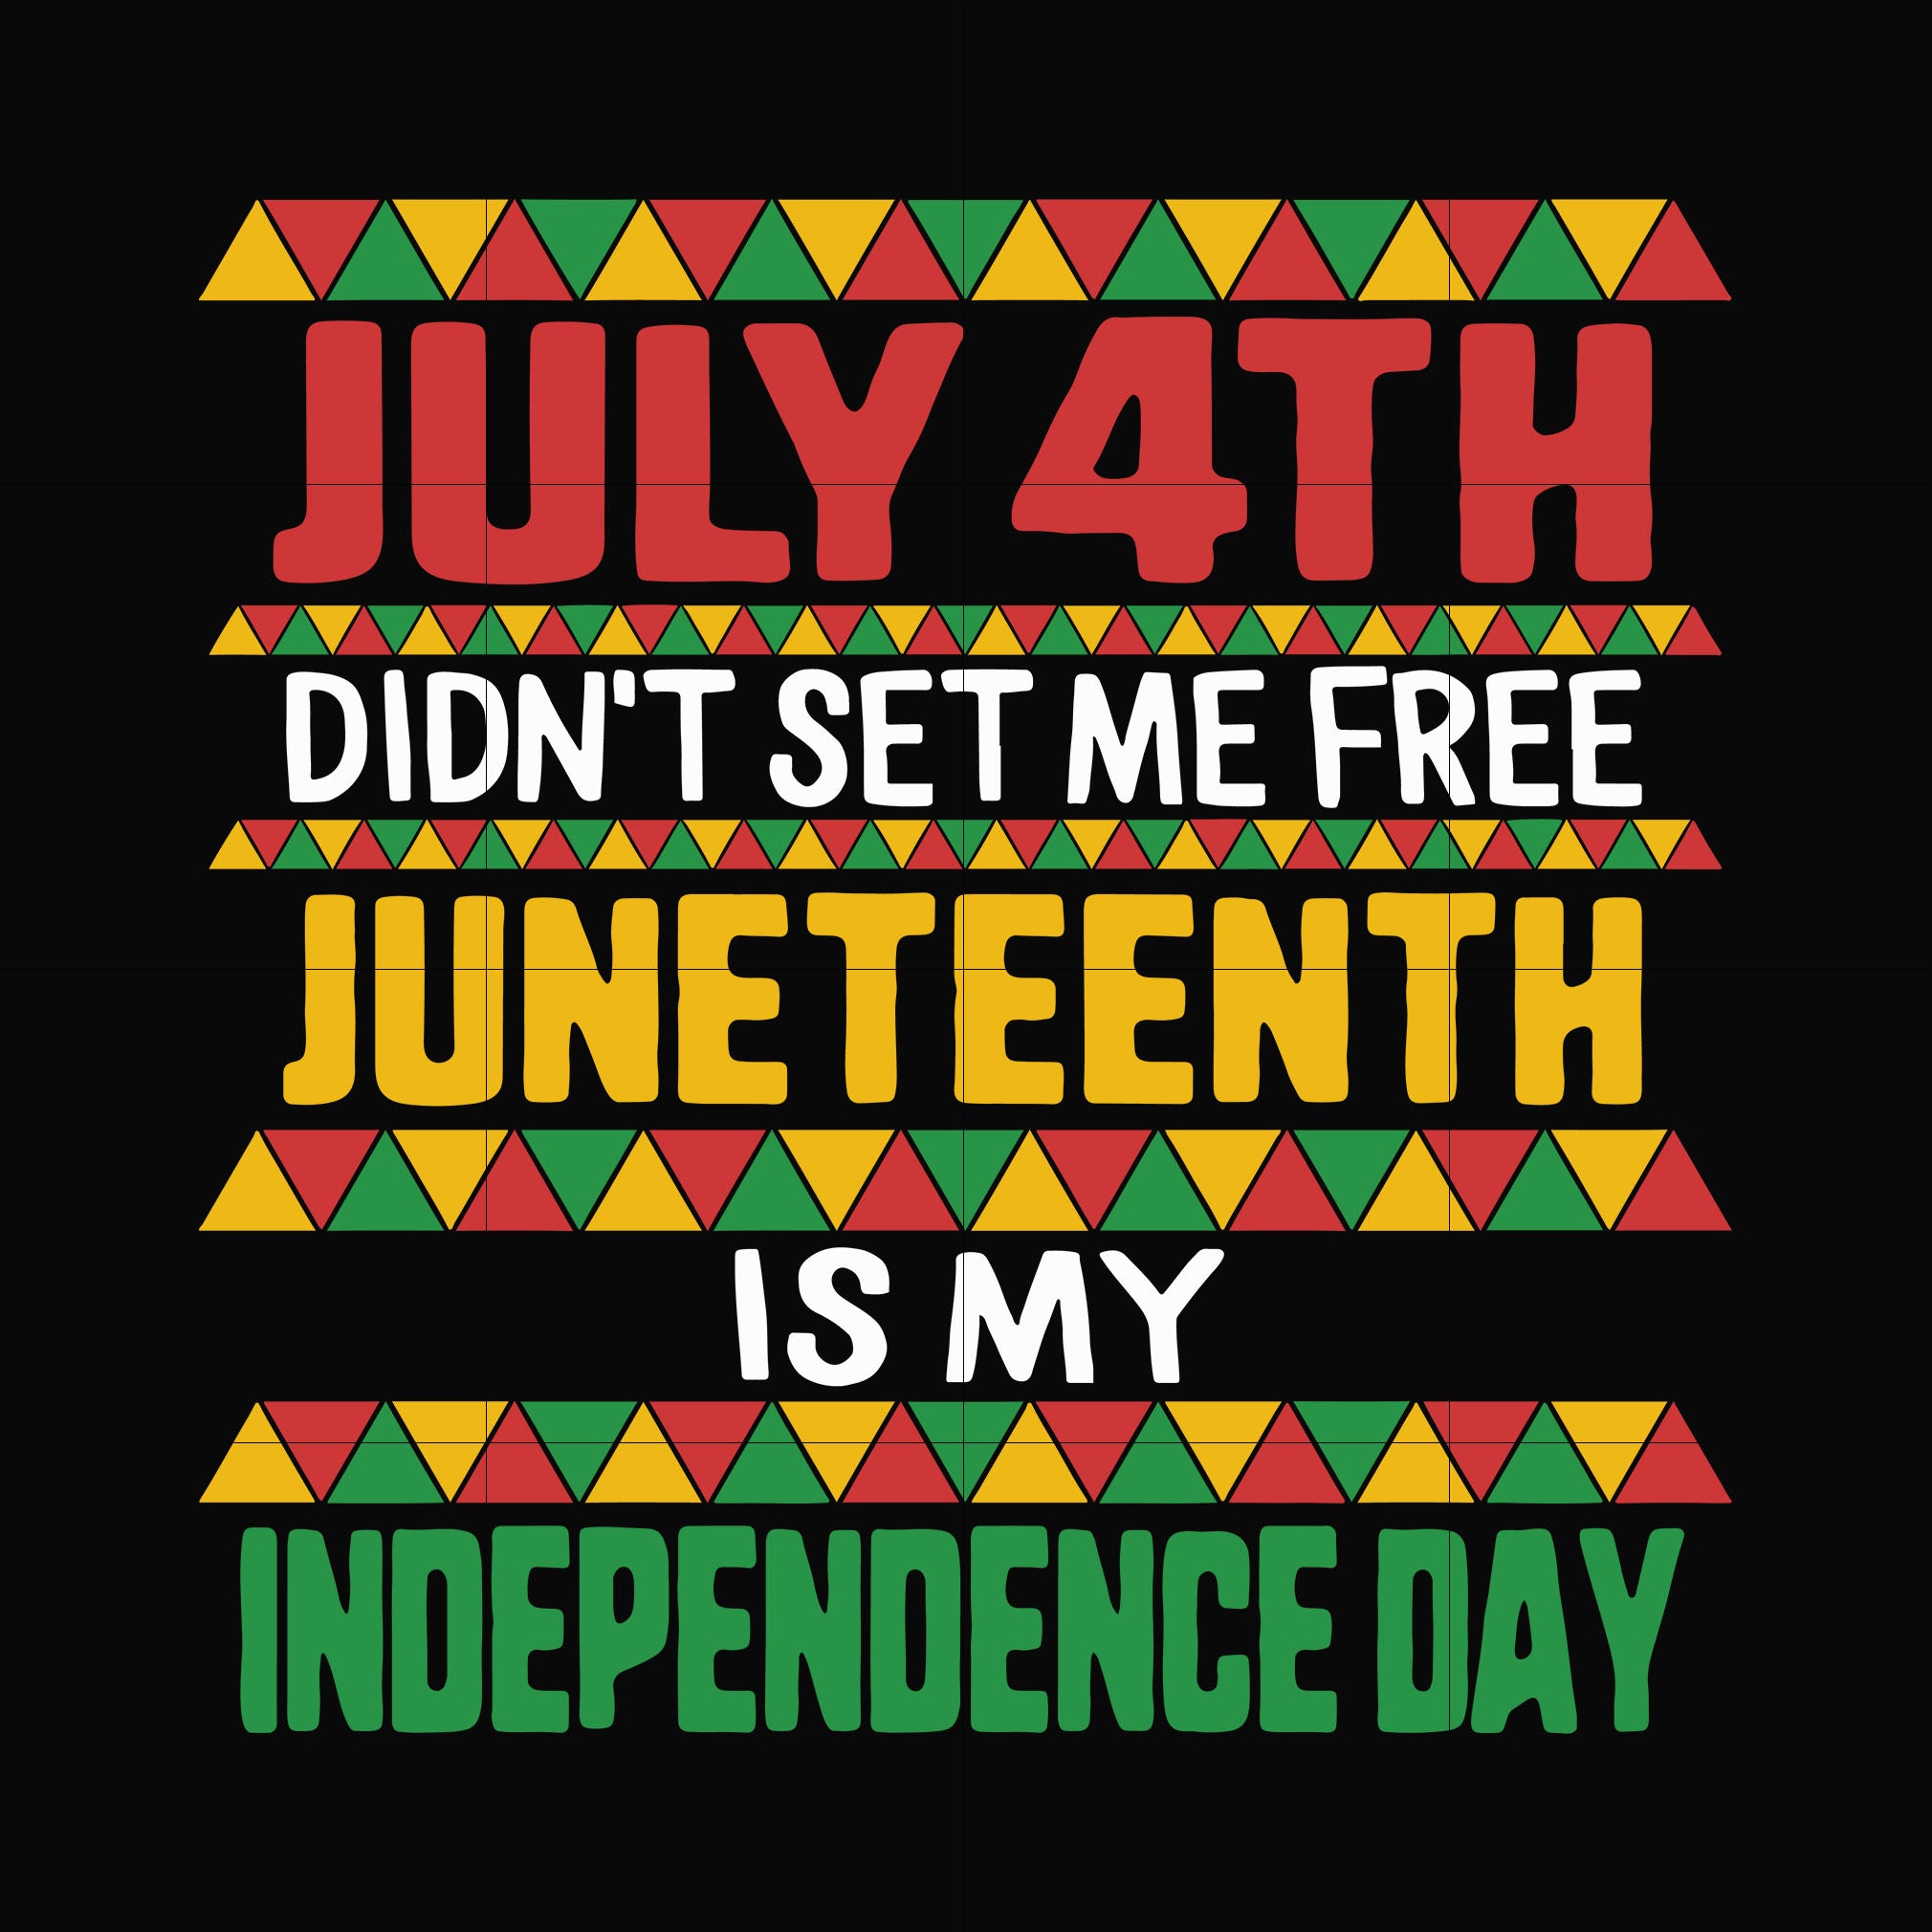 juneteenth independence day svg, png, dxf, eps, digital file JULY0024